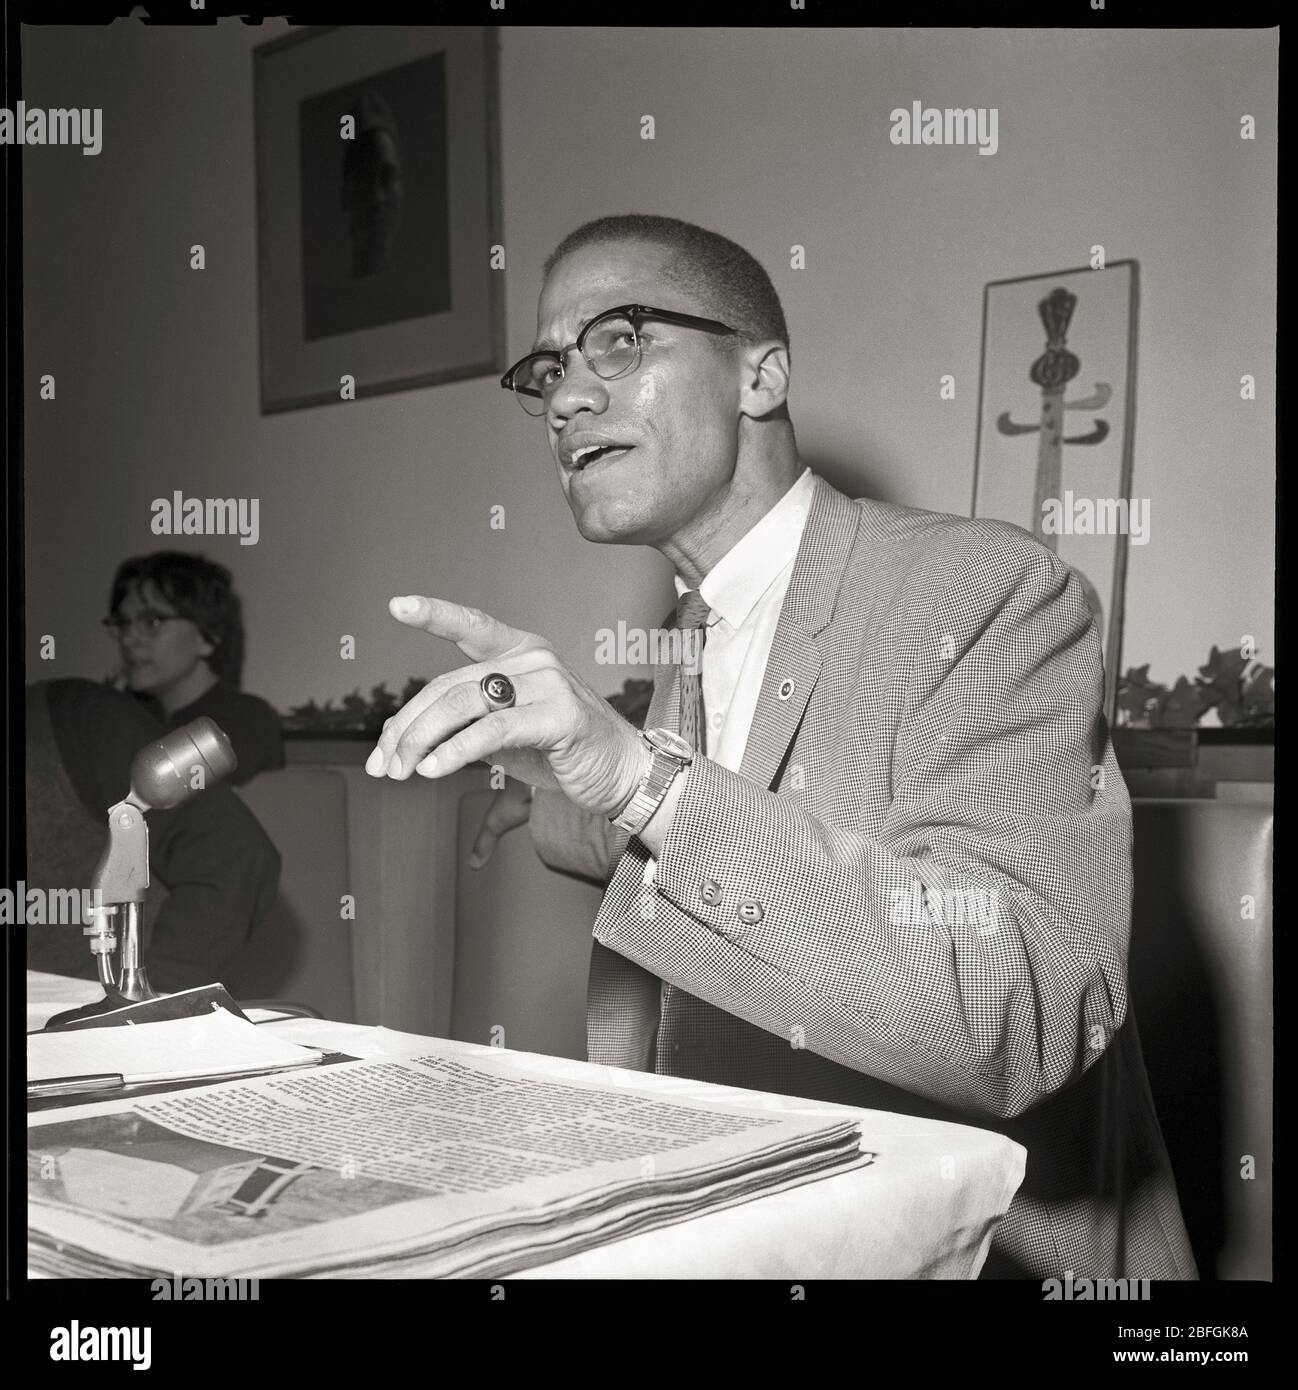 Malcolm X in Chicago, Illinois. Mai 1961. Nation des Islam und Black Muslim Führer. Bild von 2.25 x 2.25 Zoll negativ. Stockfoto